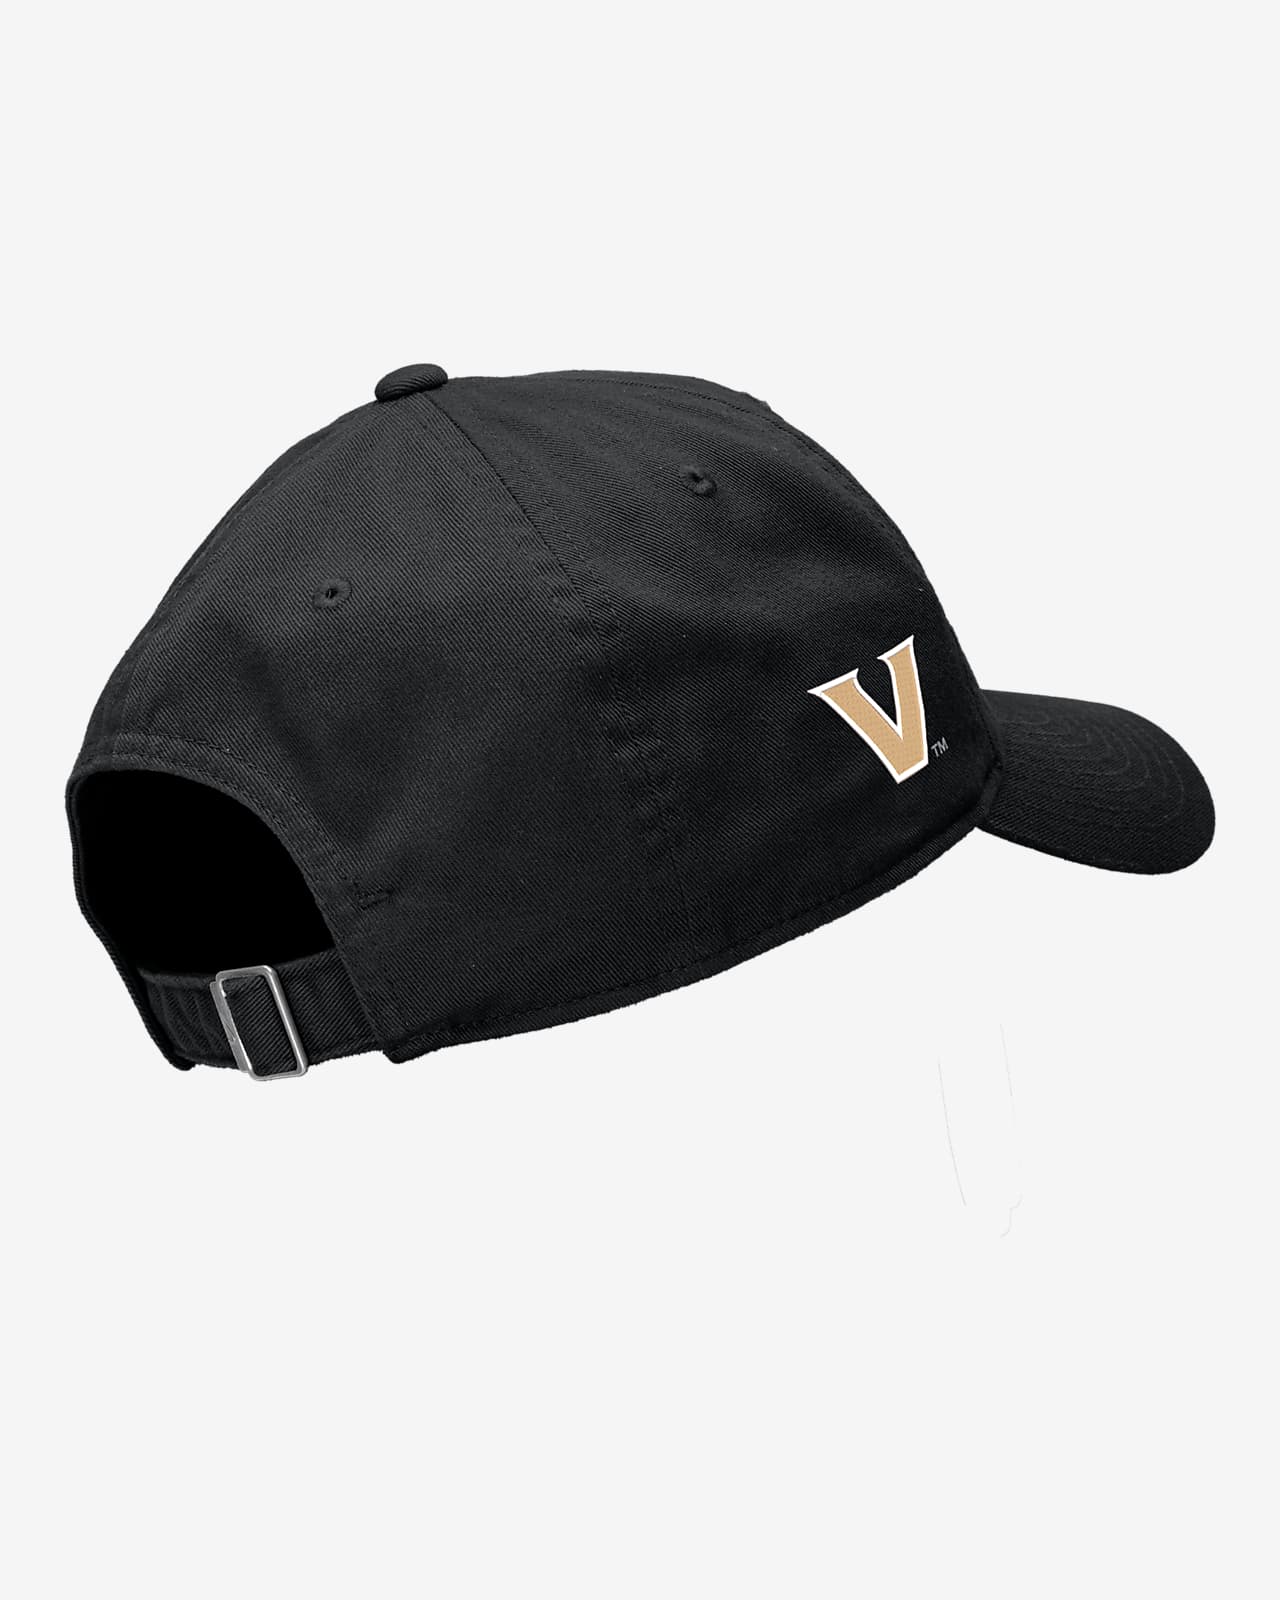 Cap. College Nike Vanderbilt